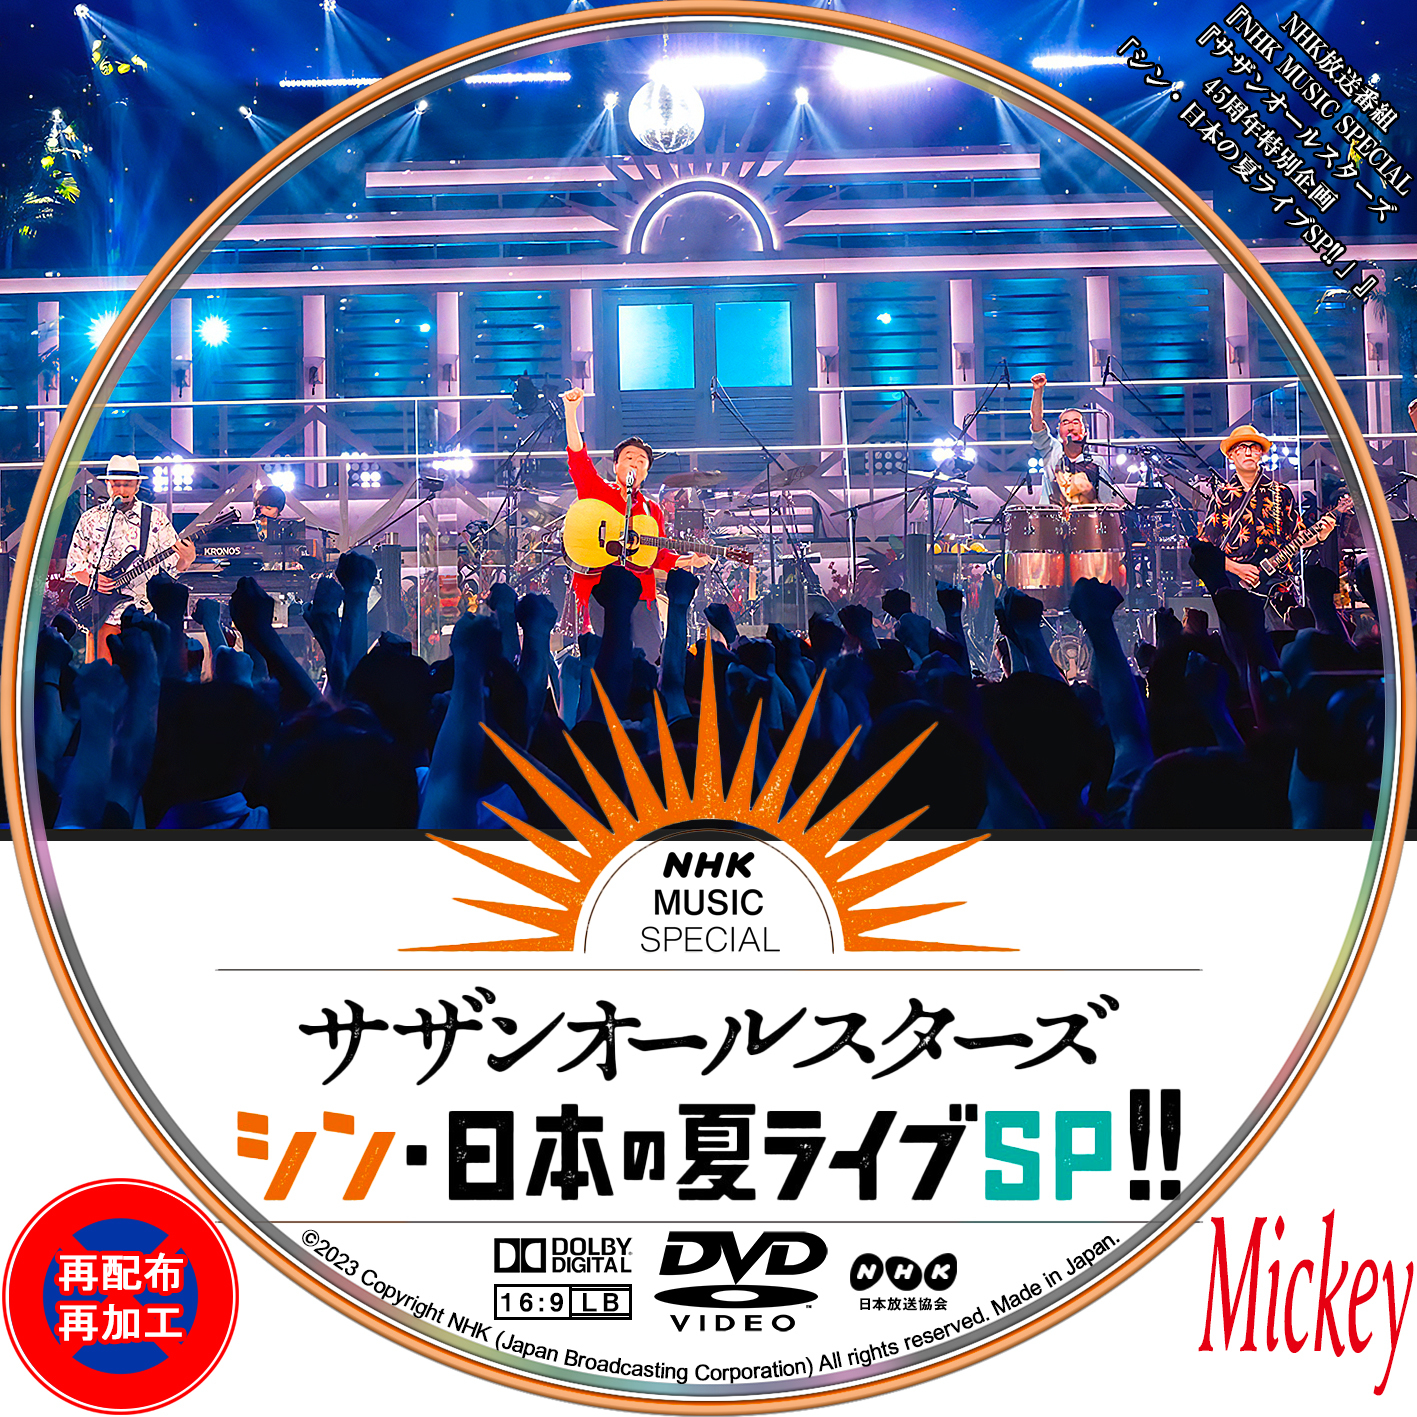 NHK放送番組『NHK MUSIC SPECIAL『サザンオールスターズ 45周年特別企画「シン・日本の夏ライブSP!! 」』Blu-ray盤